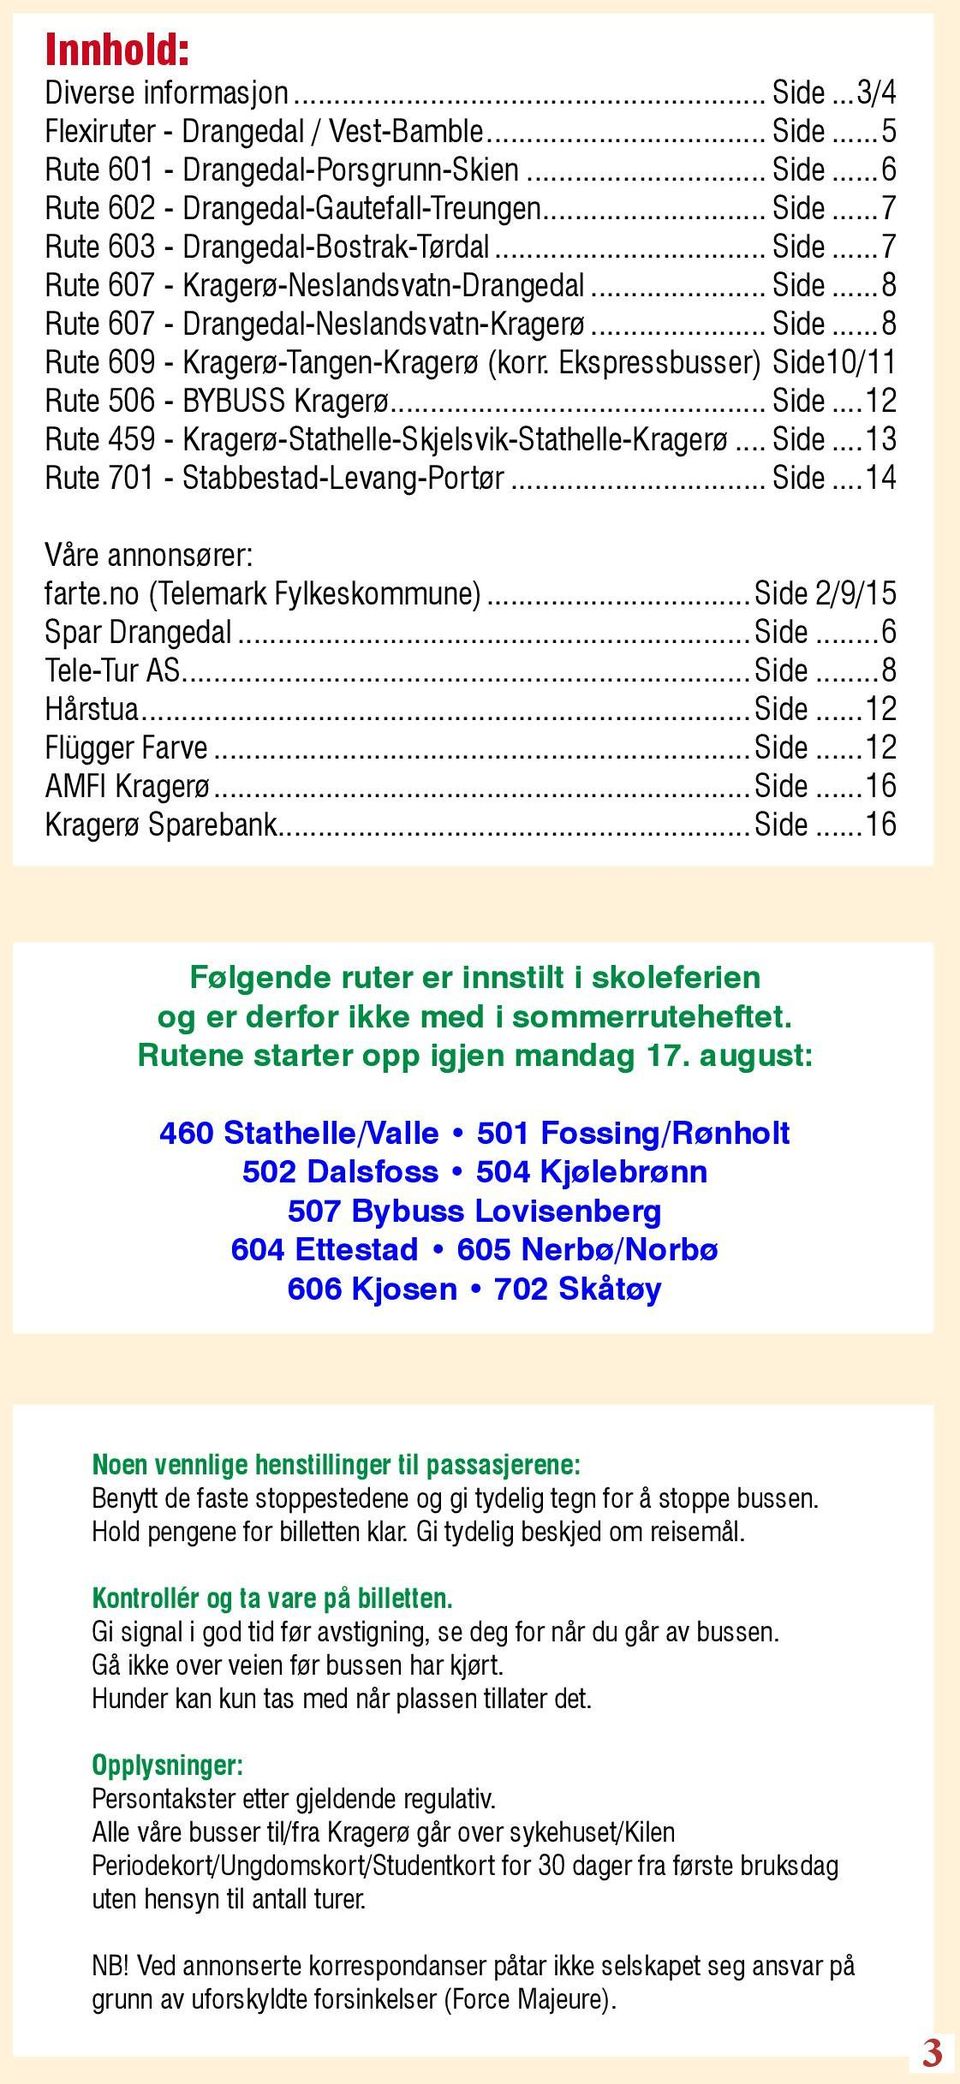 .. Side...12 Rute 459 - Kragerø-Stathelle-Skjelsvik-Stathelle-Kragerø... Side...13 Rute 701 - Stabbestad-Levang-Portør... Side...14 Våre annonsører: farte.no (Telemark Fylkeskommune)... Side.2/9/15 Spar Drangedal.